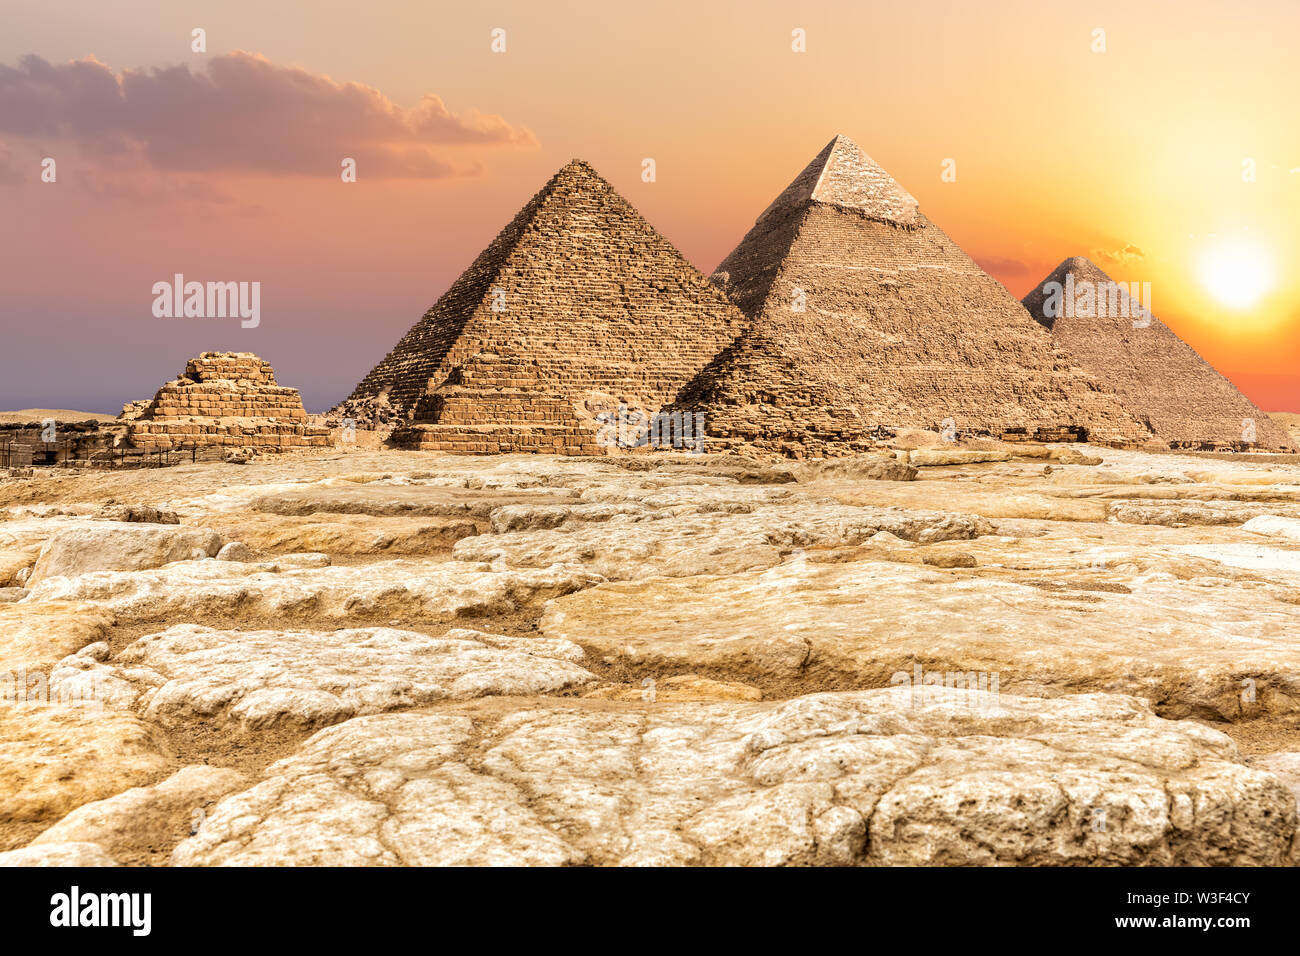 Giza Necropolis, famous Pyramids in the desert, Egypt Stock Photo